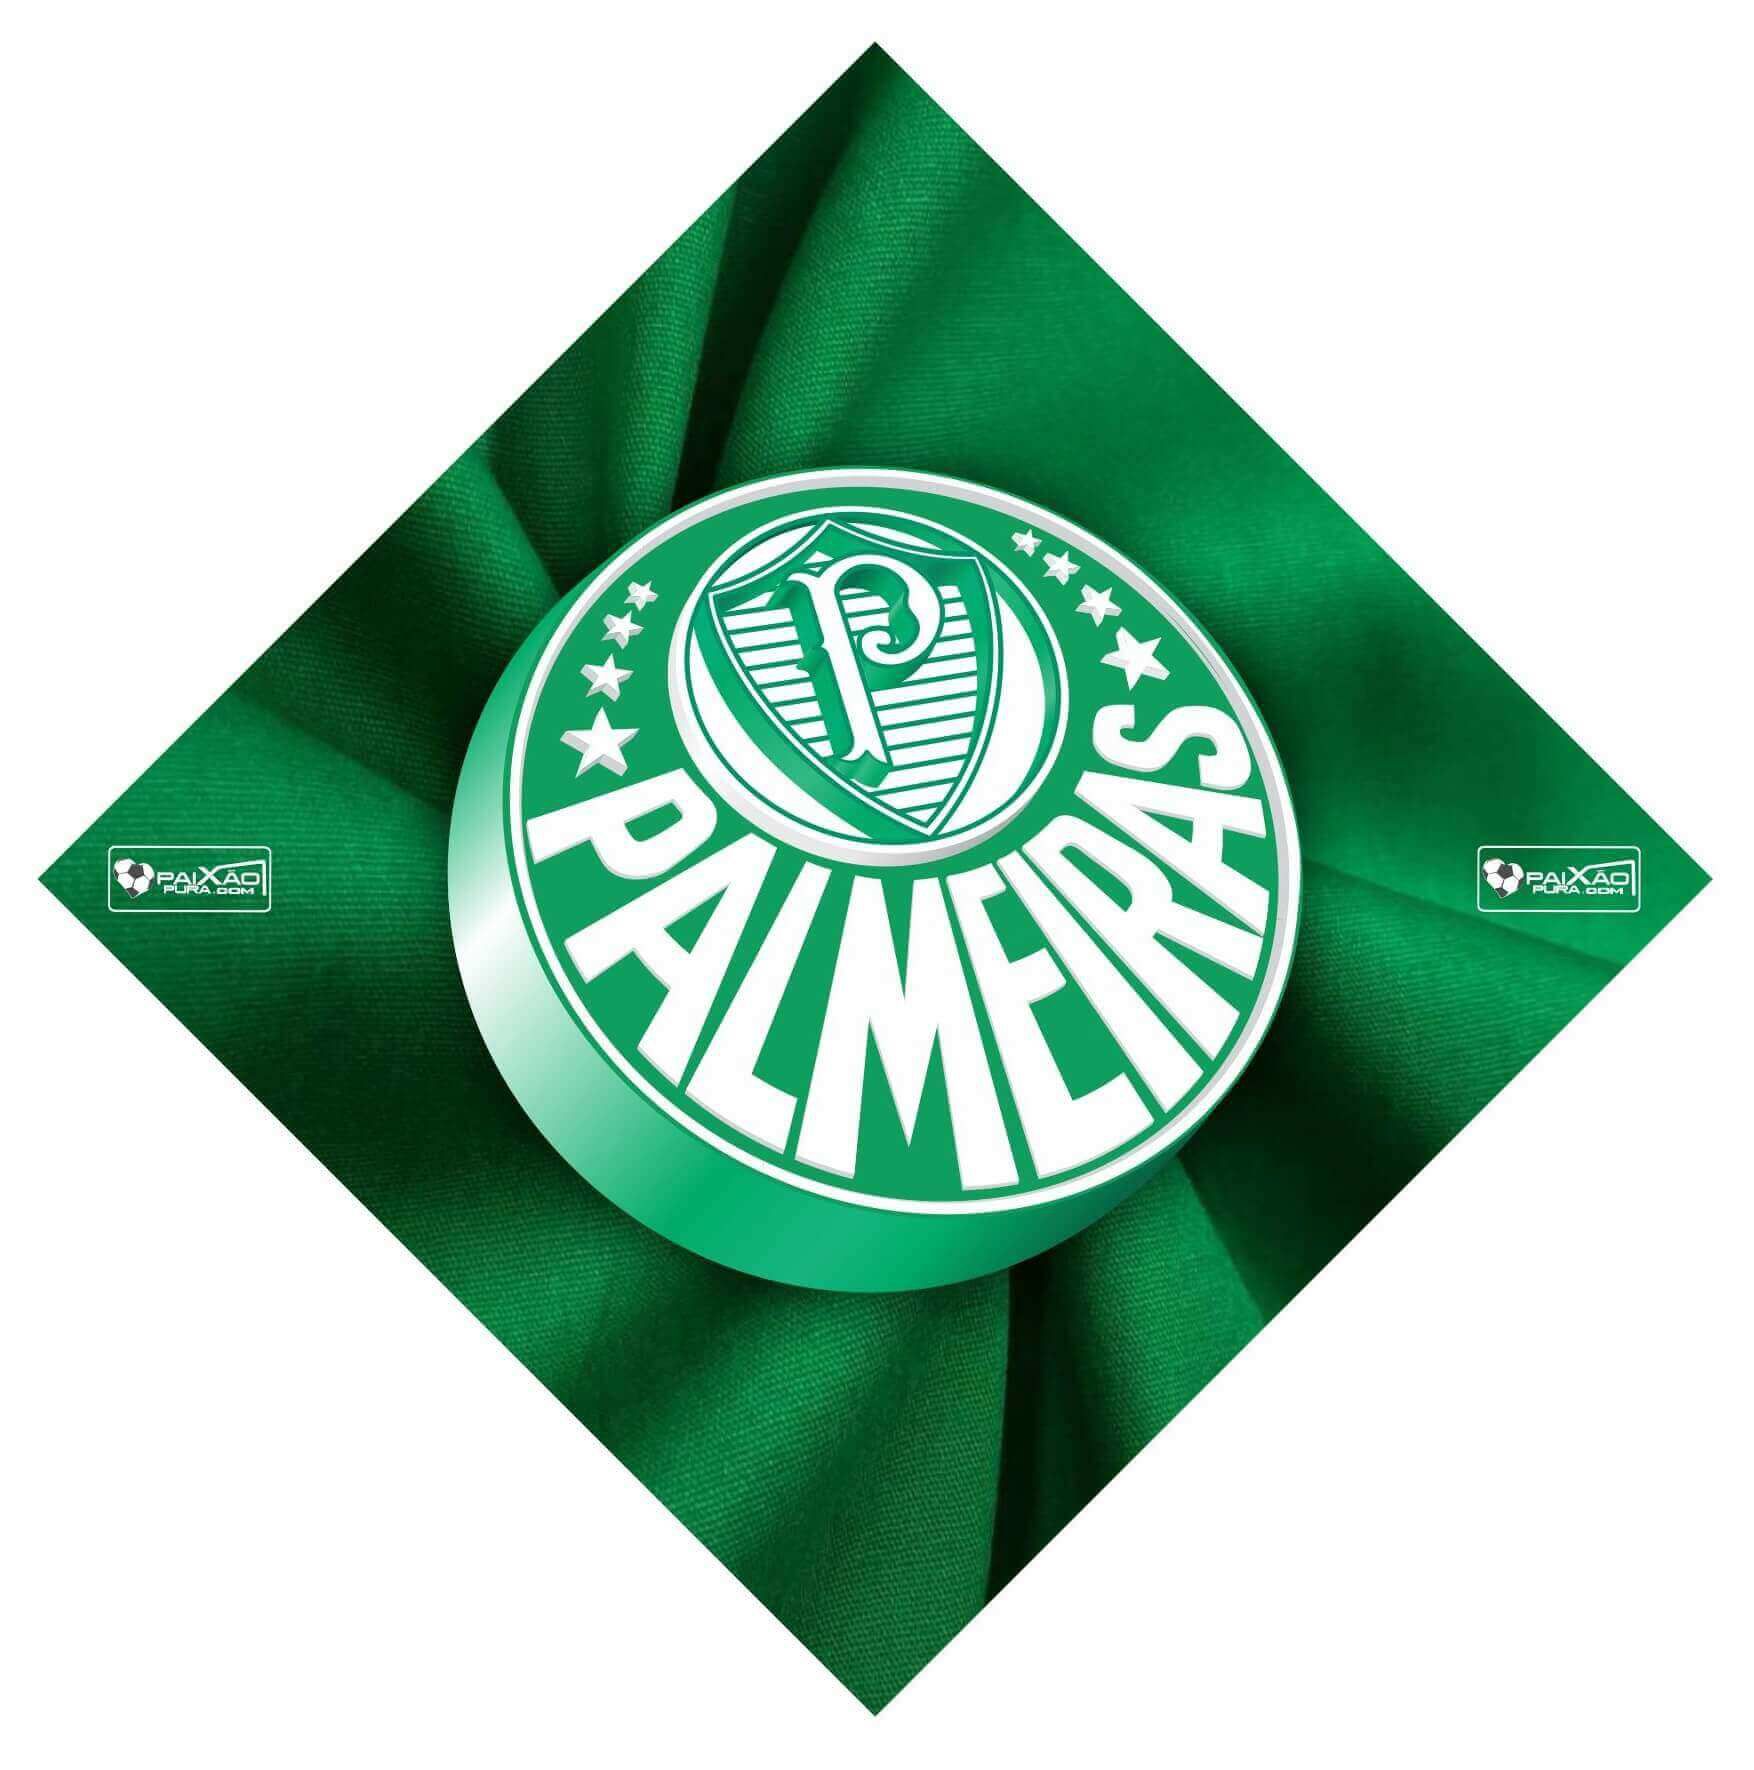 Escudos – Palmeiras